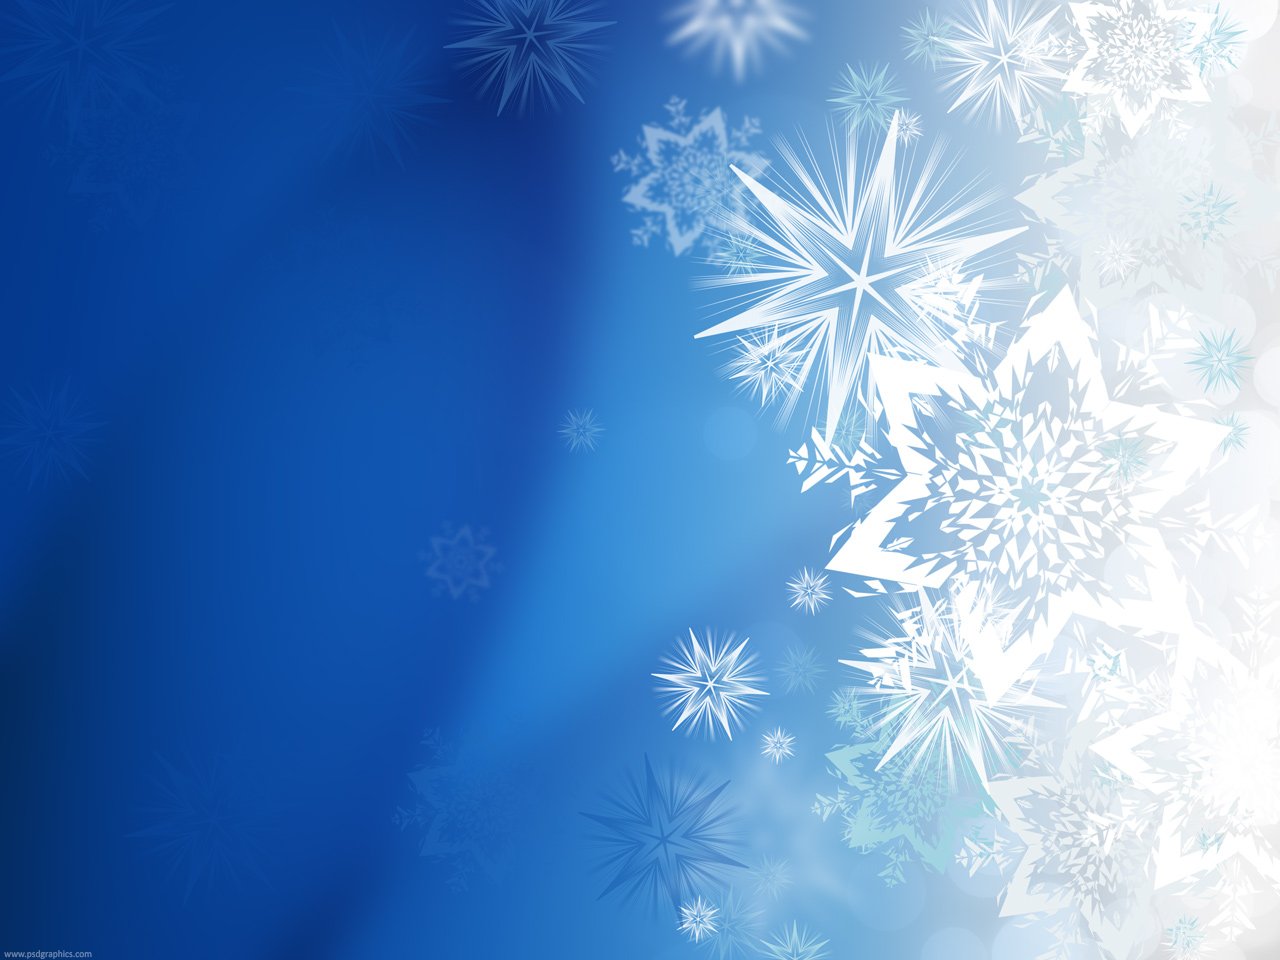 Magic Winter Snowflakes Psdgraphics HD Wallpapers Download Free Images Wallpaper [wallpaper981.blogspot.com]